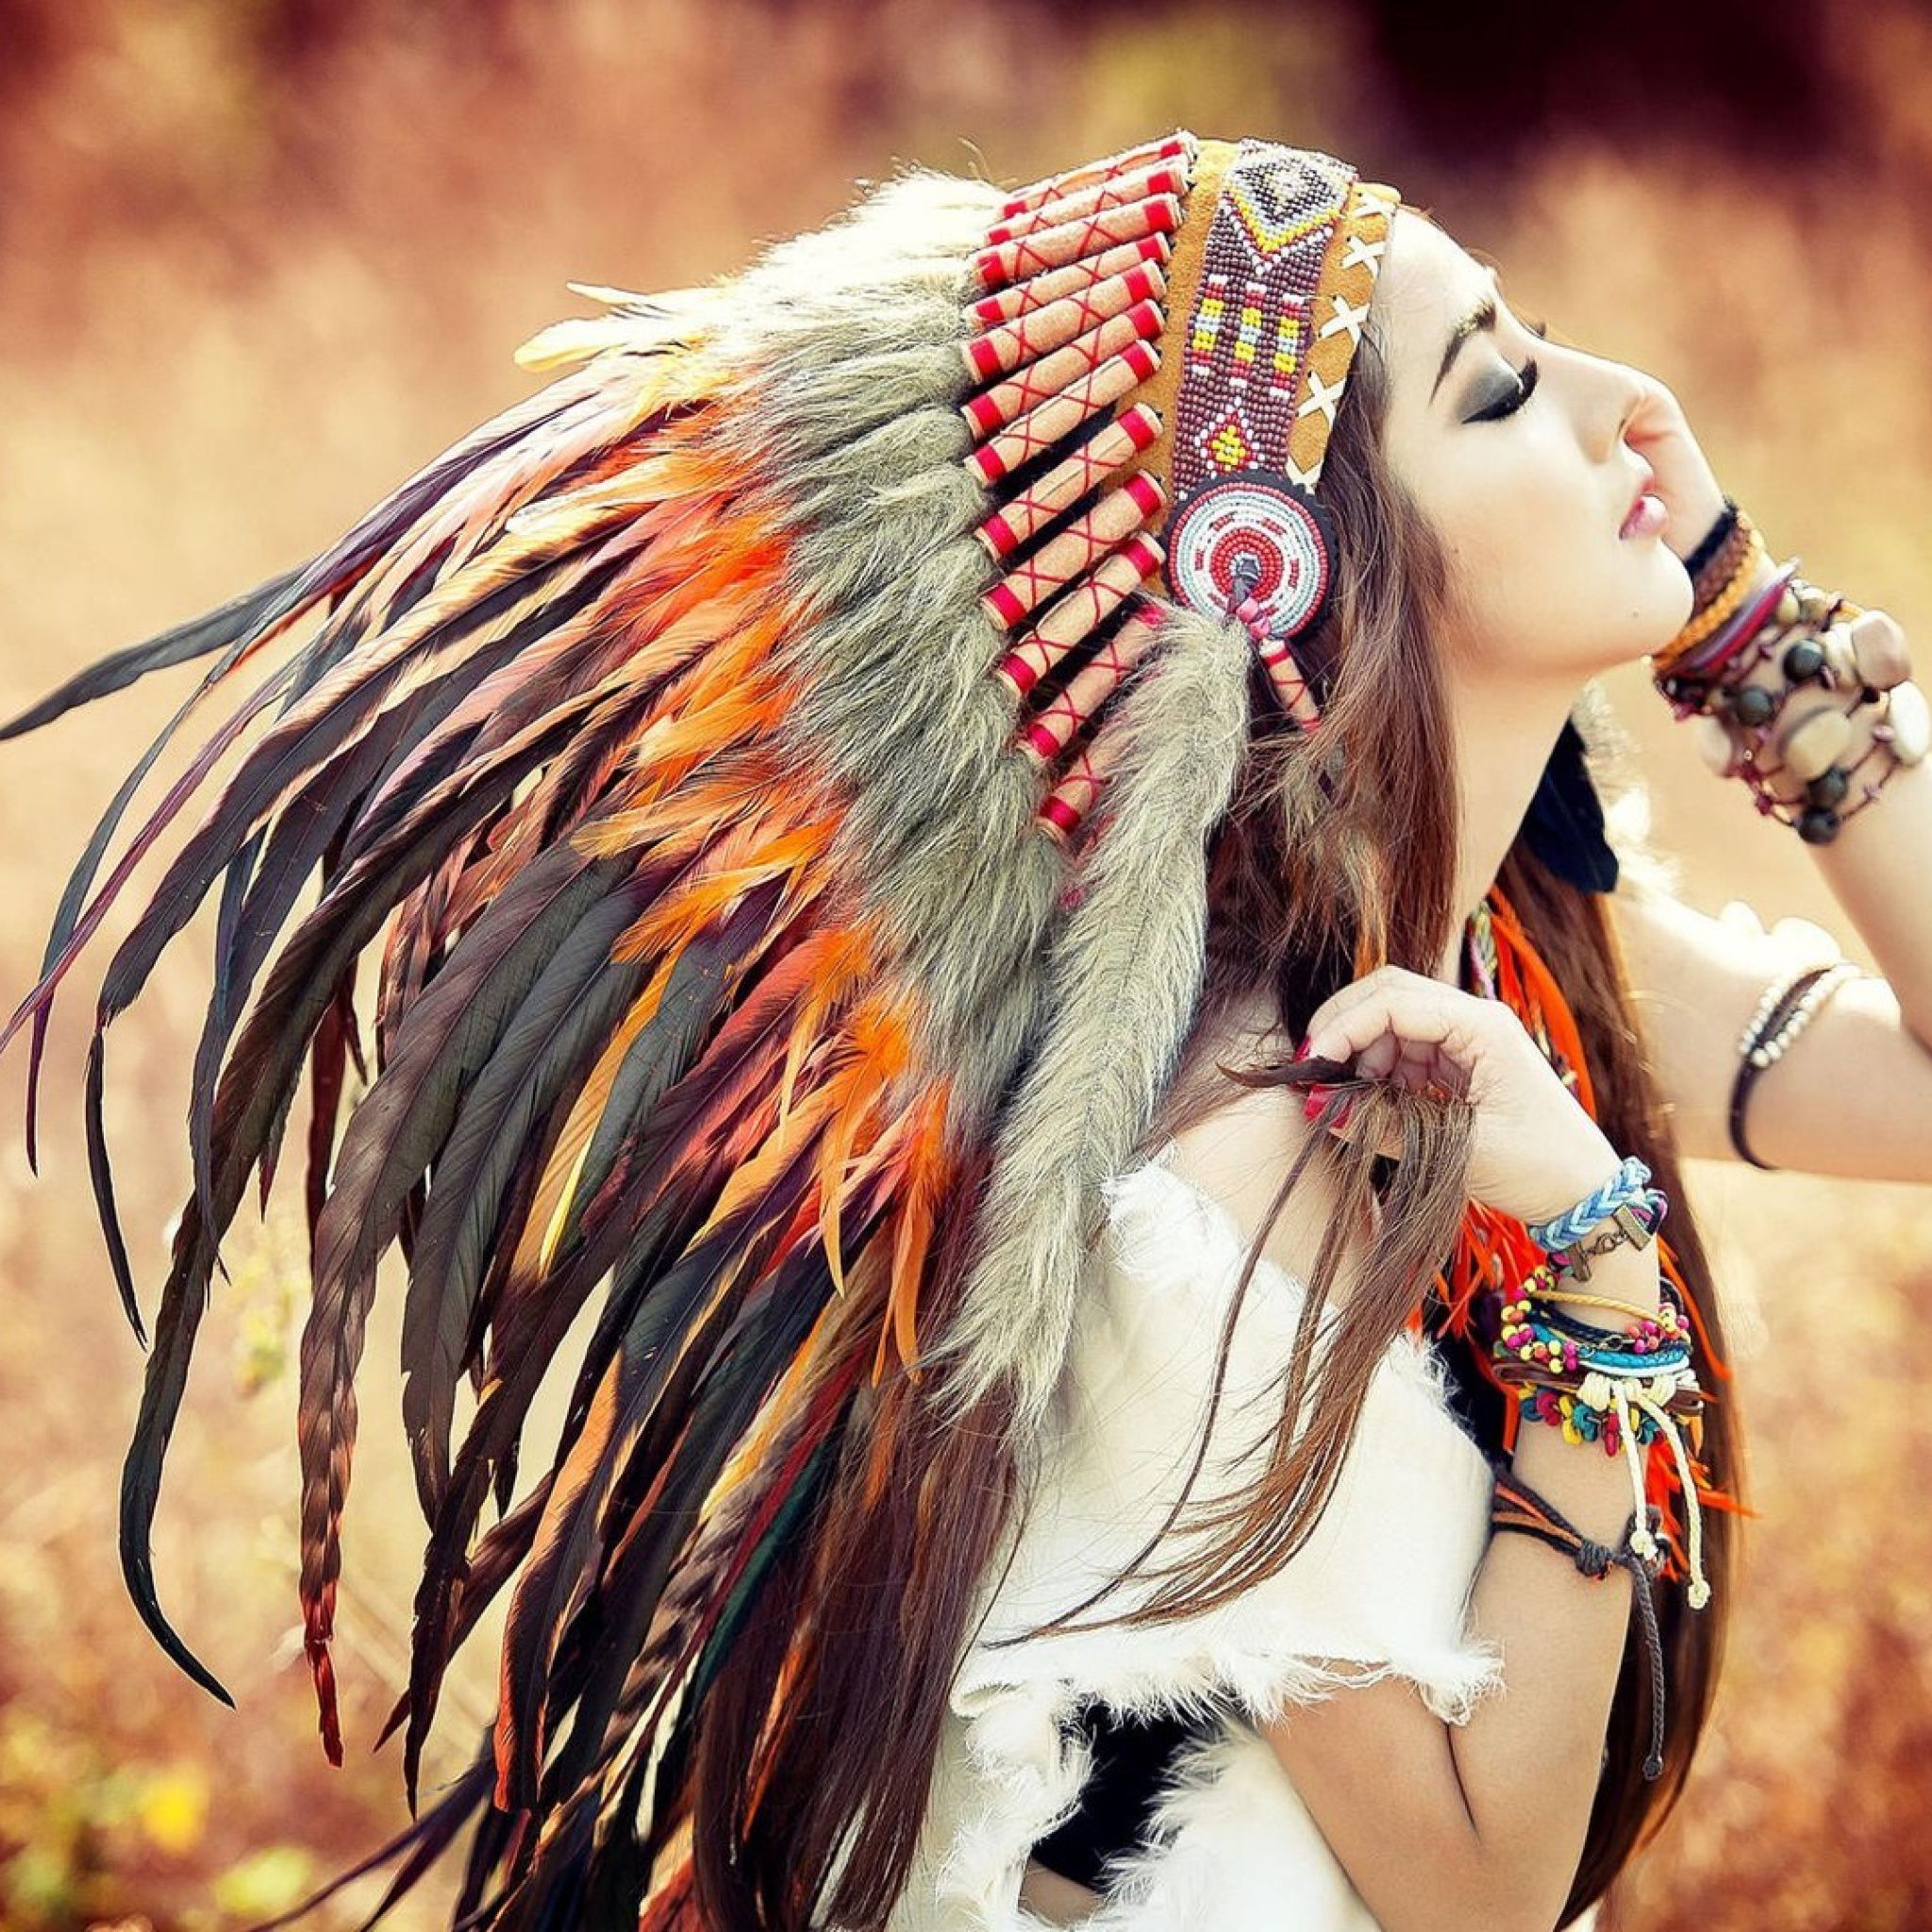 Ethnic music best. Индейцы СКВО Северной Америки. Индейцы девушки. Девушка в индейском головном уборе. Девушка в индейском наряде.